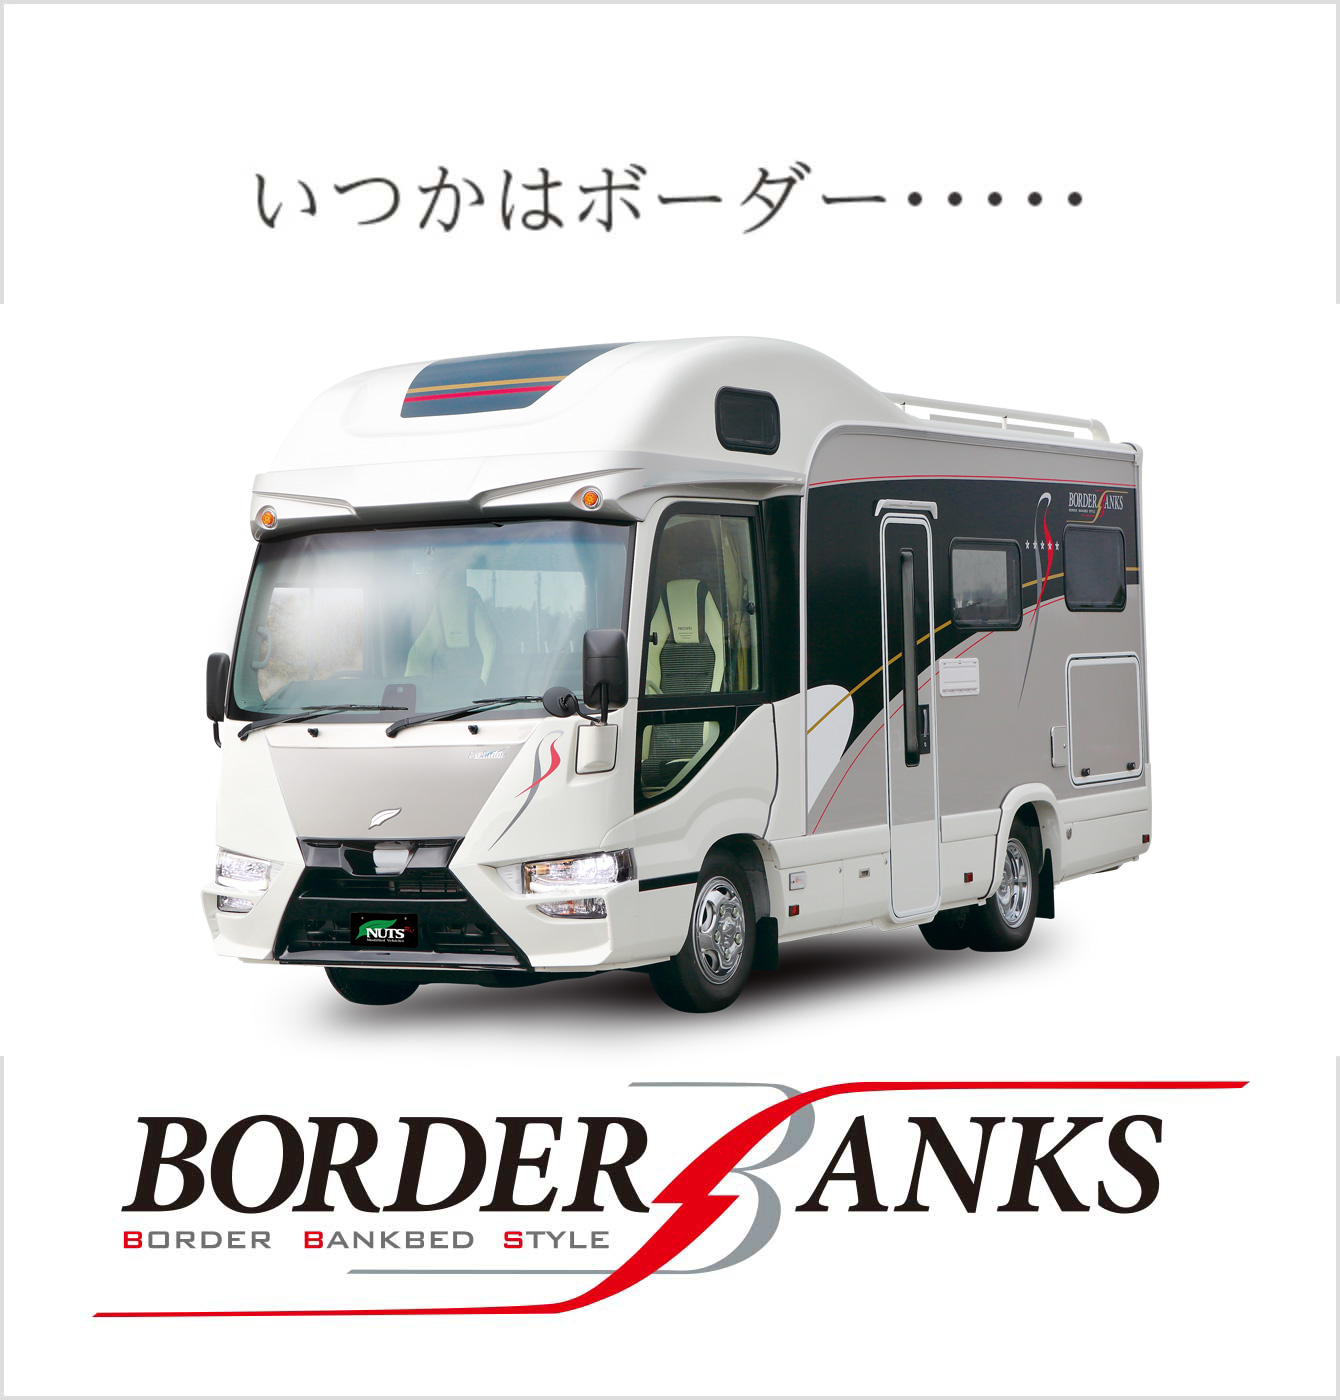 フルコンキャンピングカー「ボーダーバンクス-BORDER BANKS」はこちら